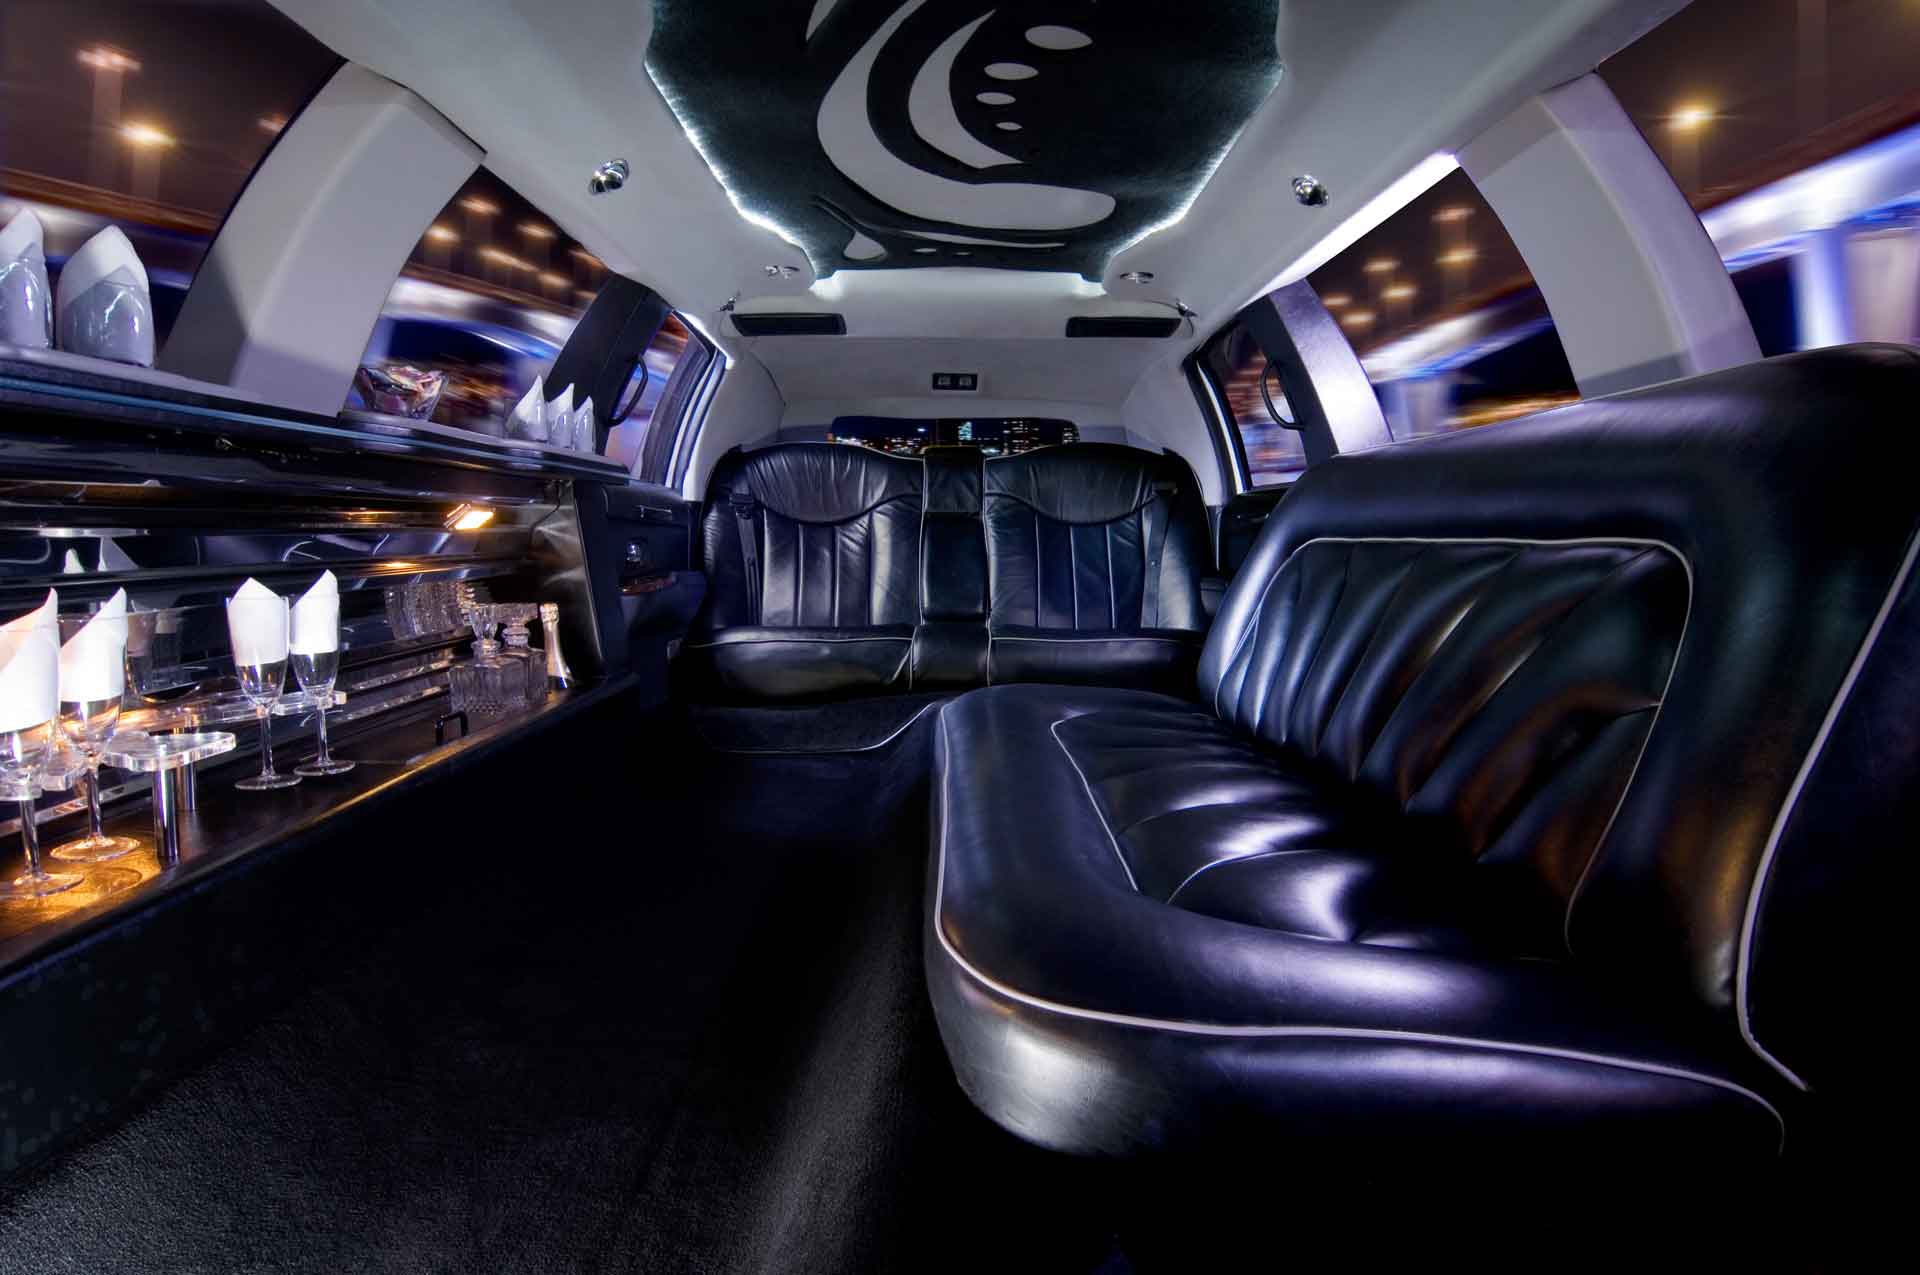 Interior of empty limousine